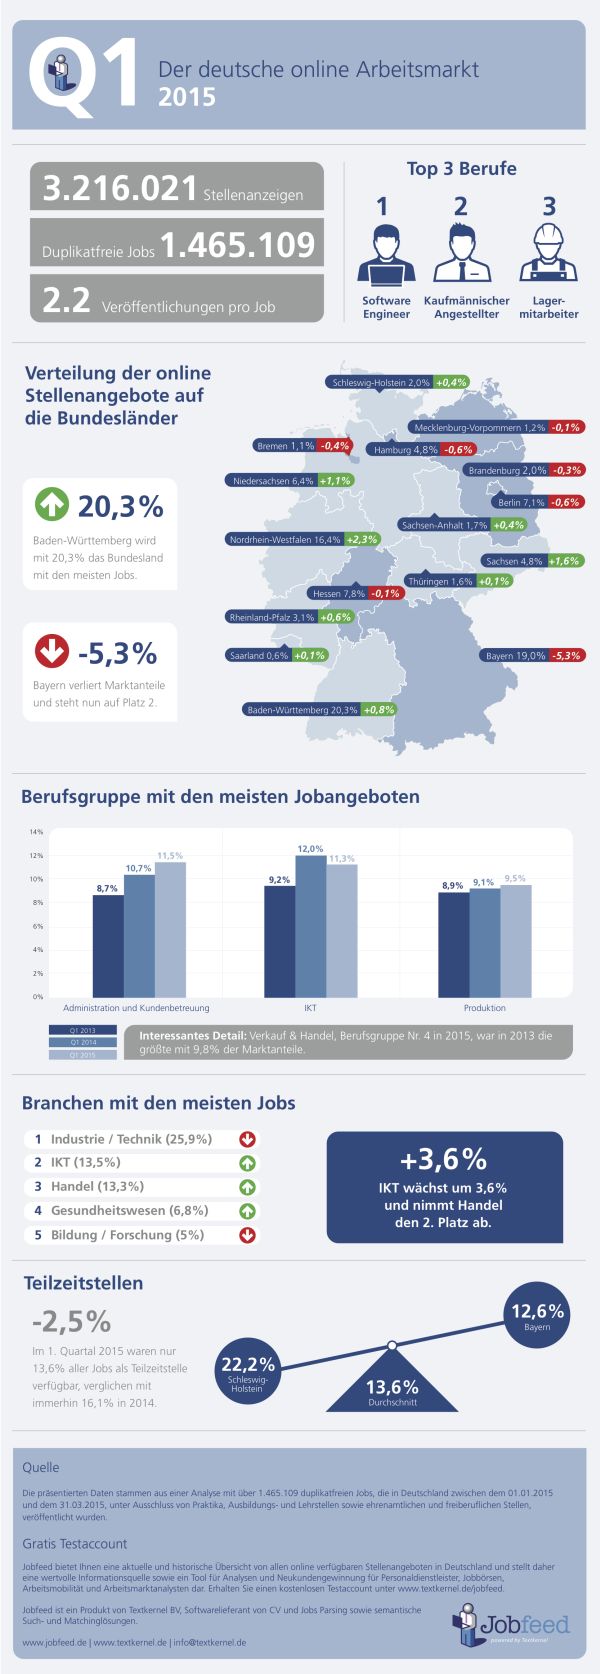 Der deutsche Arbeitsmarkt 2015 1. Quartal (Quelle: Jobfeed)